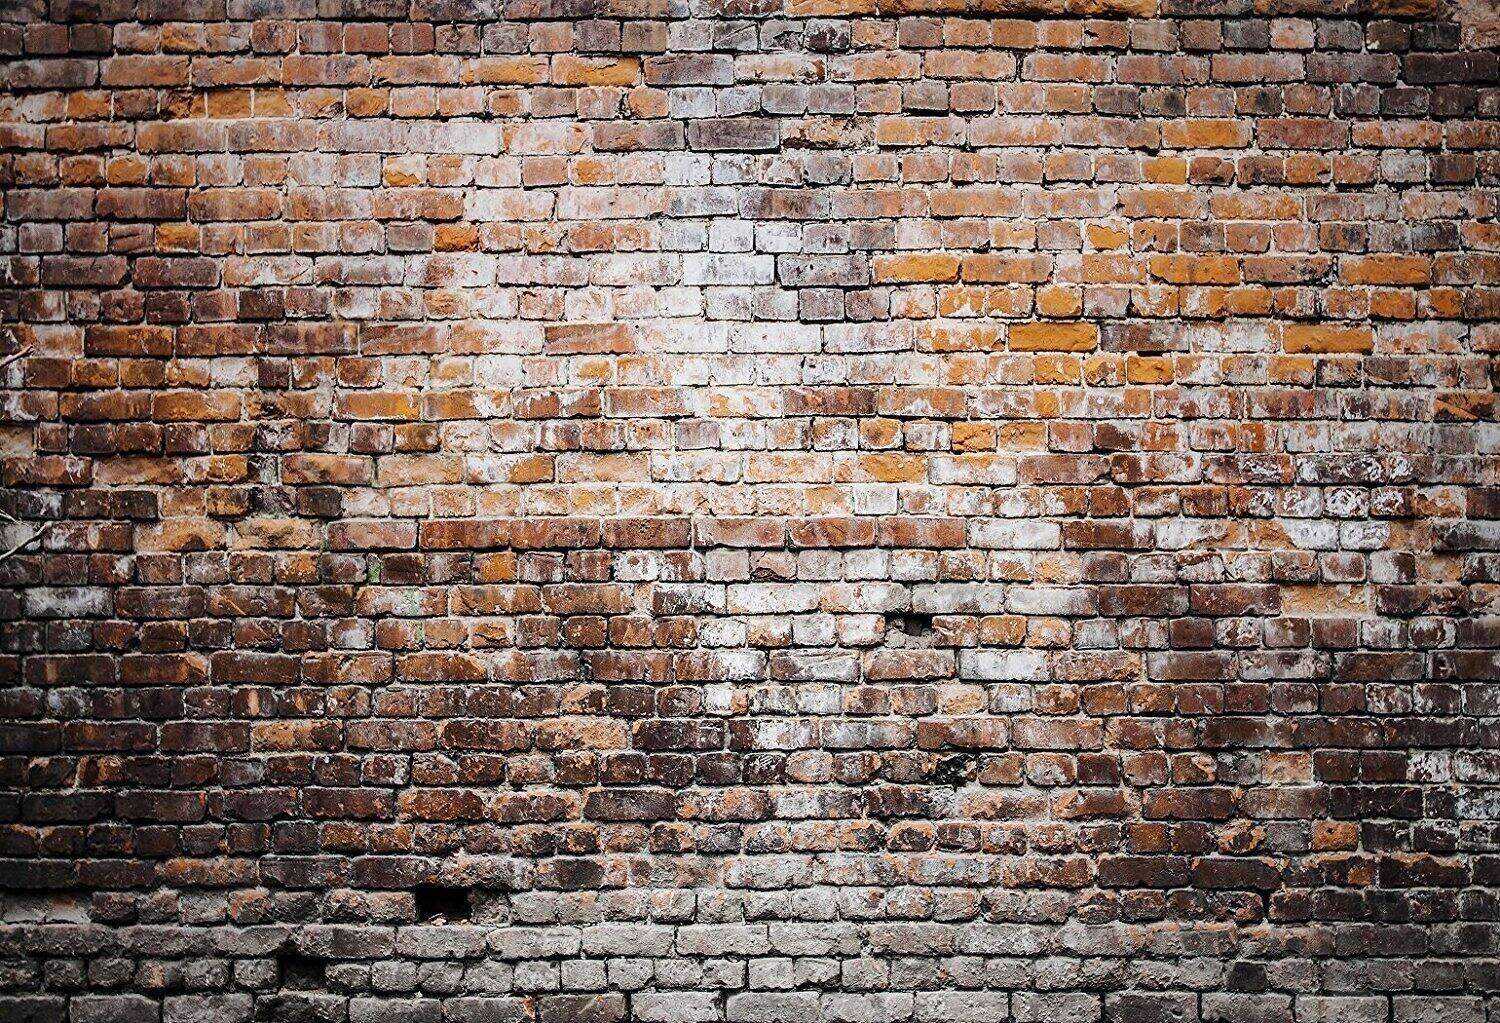 Katebackdrop：Kate Dark Retro Brick Wall Background for photos